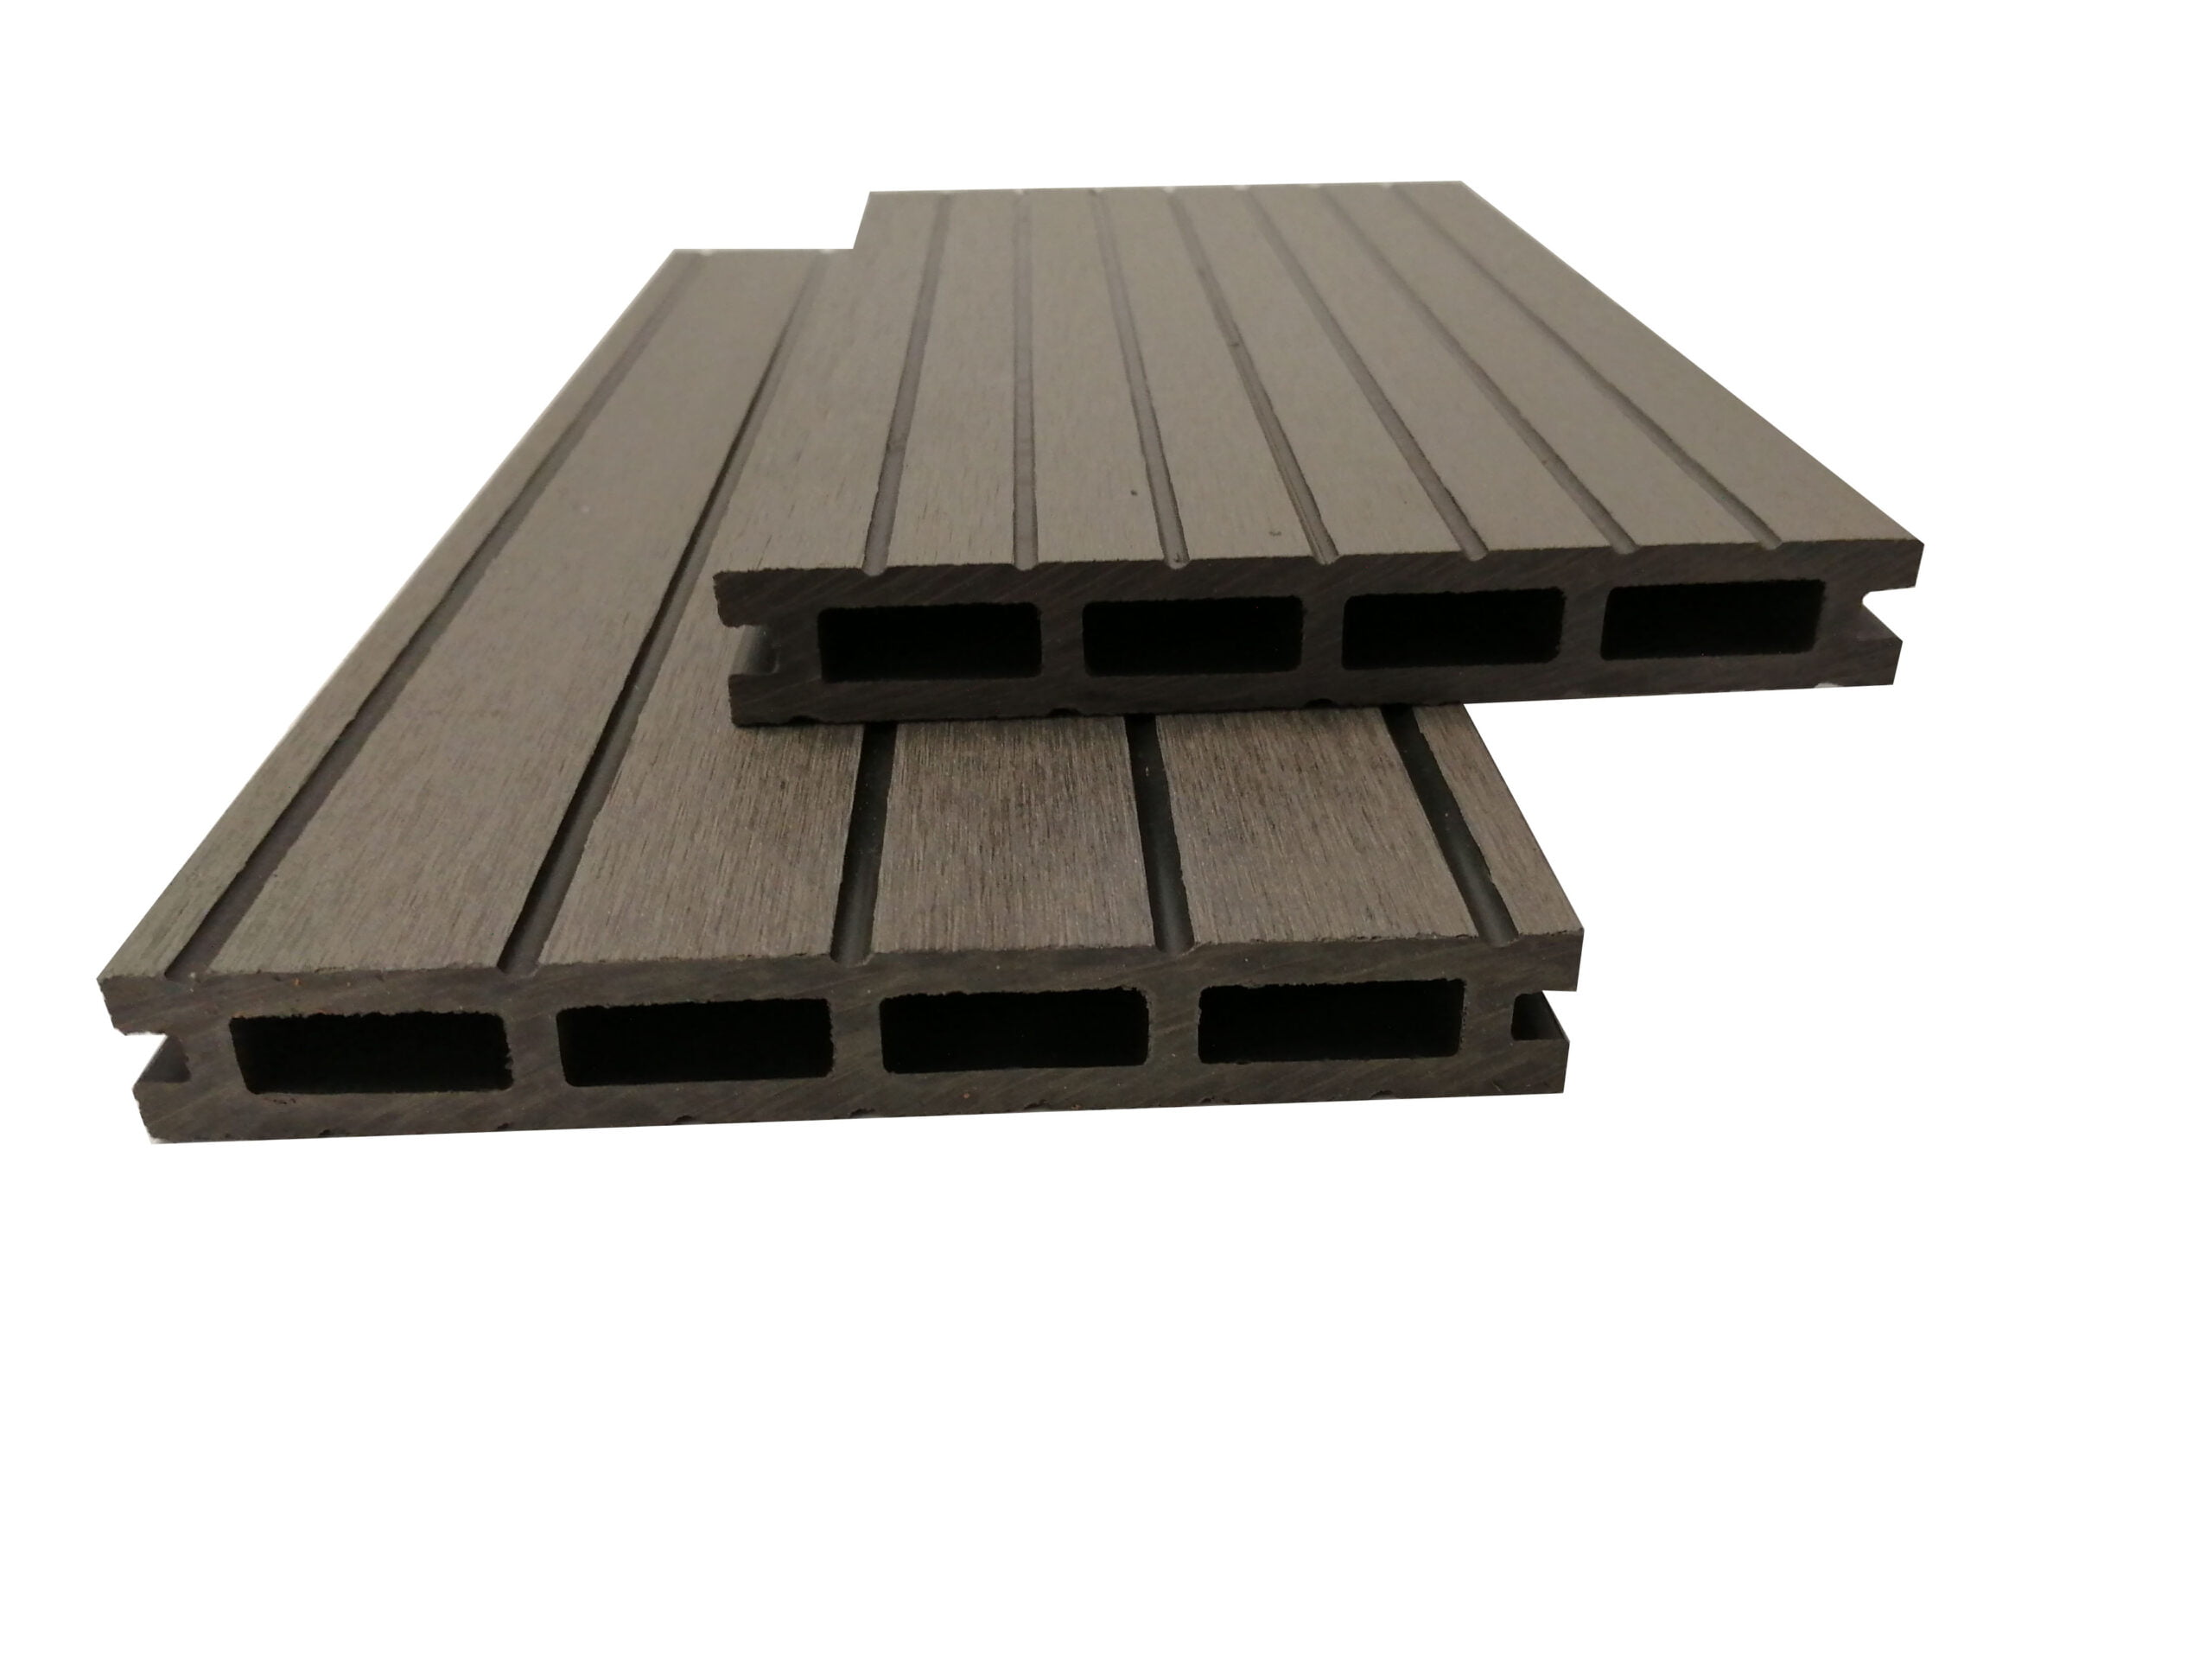 DuoGroove light grey wood plastic composite decking